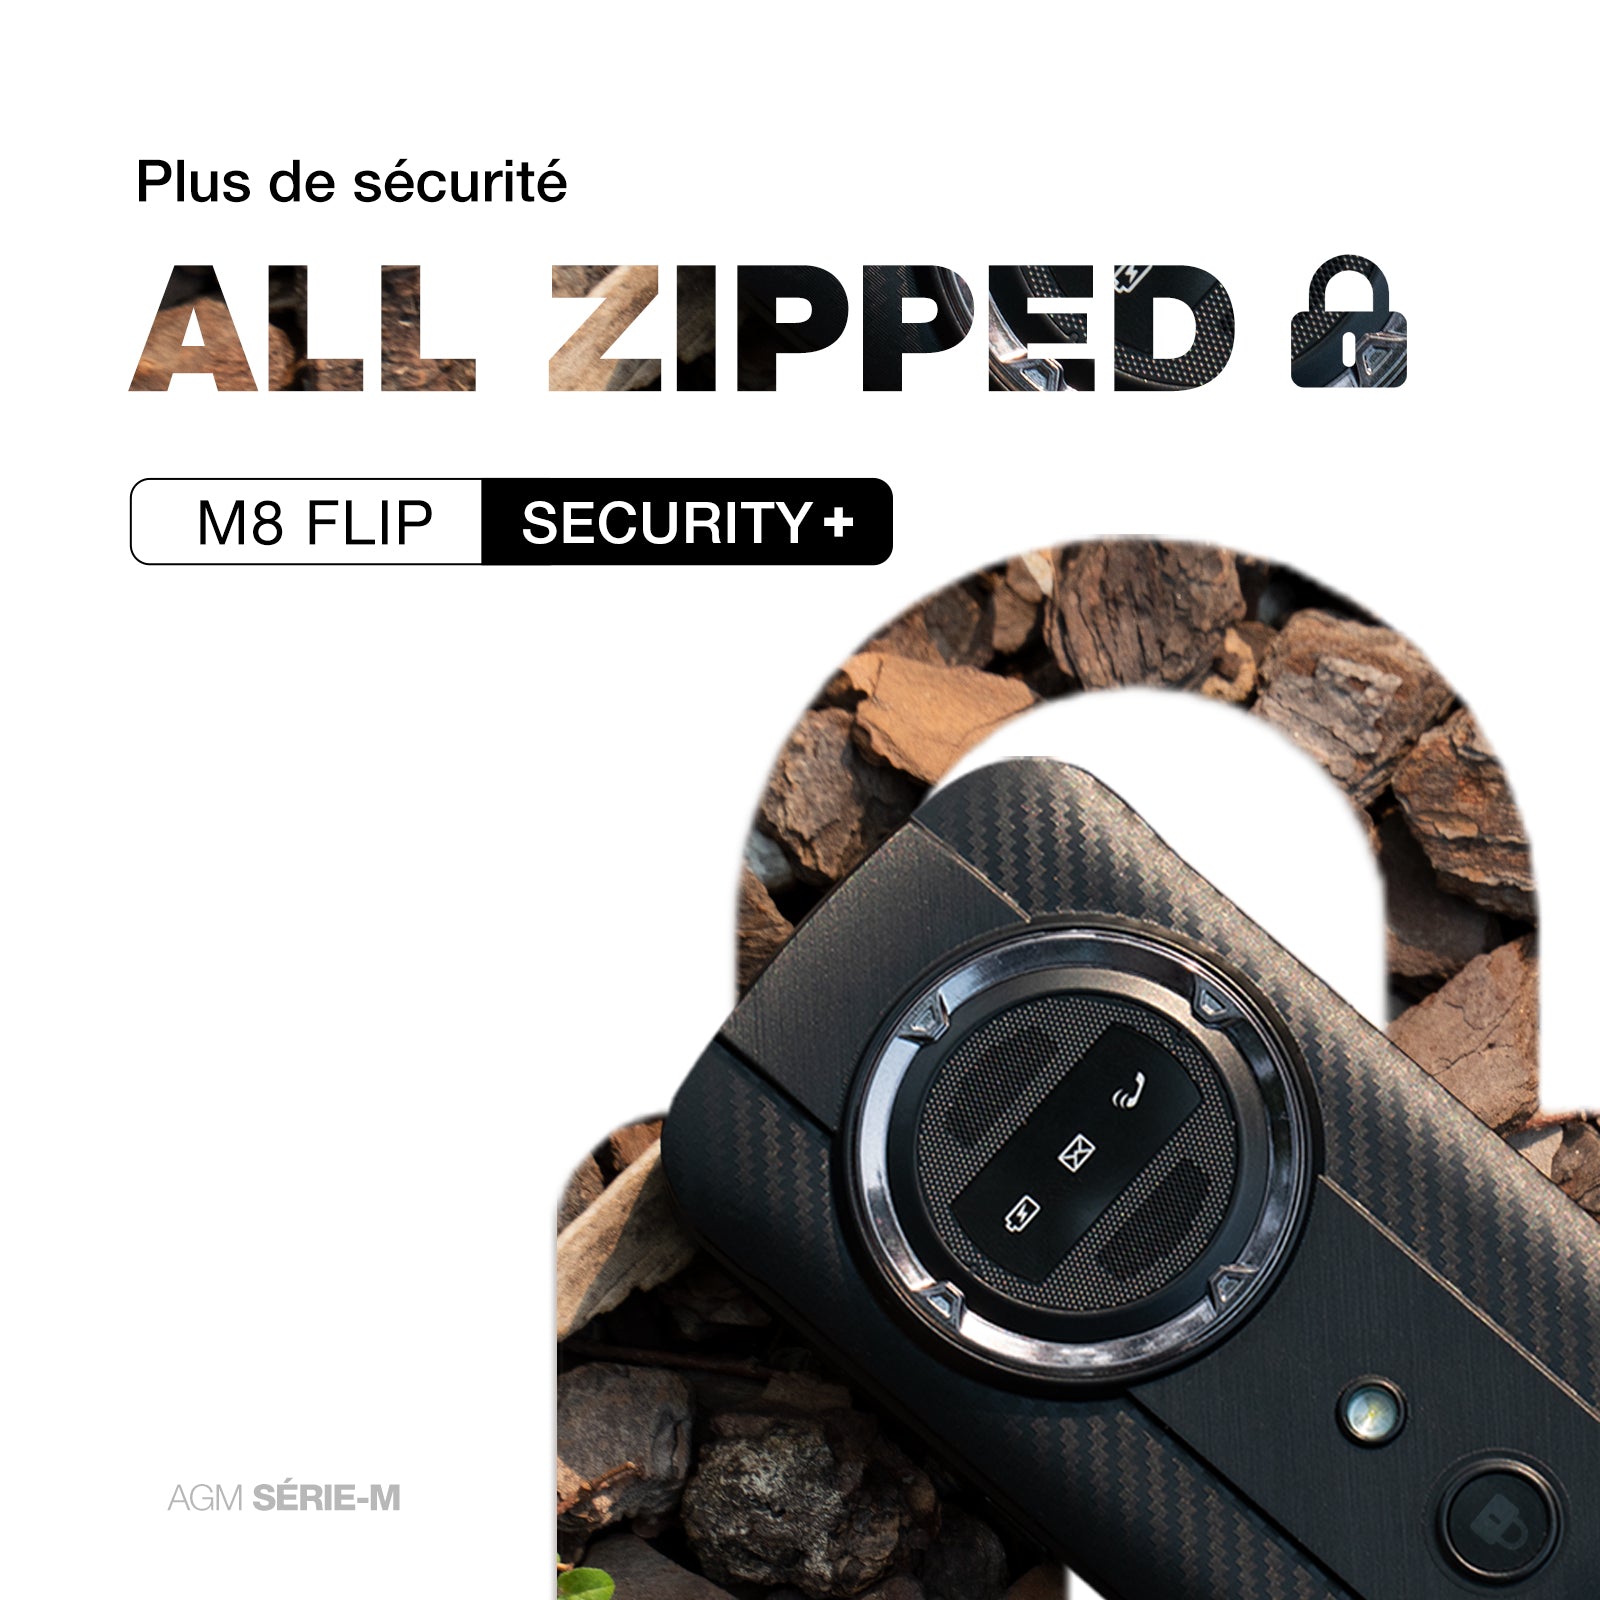 AGM M8 FLIP Security+, Téléphone à clapet robuste